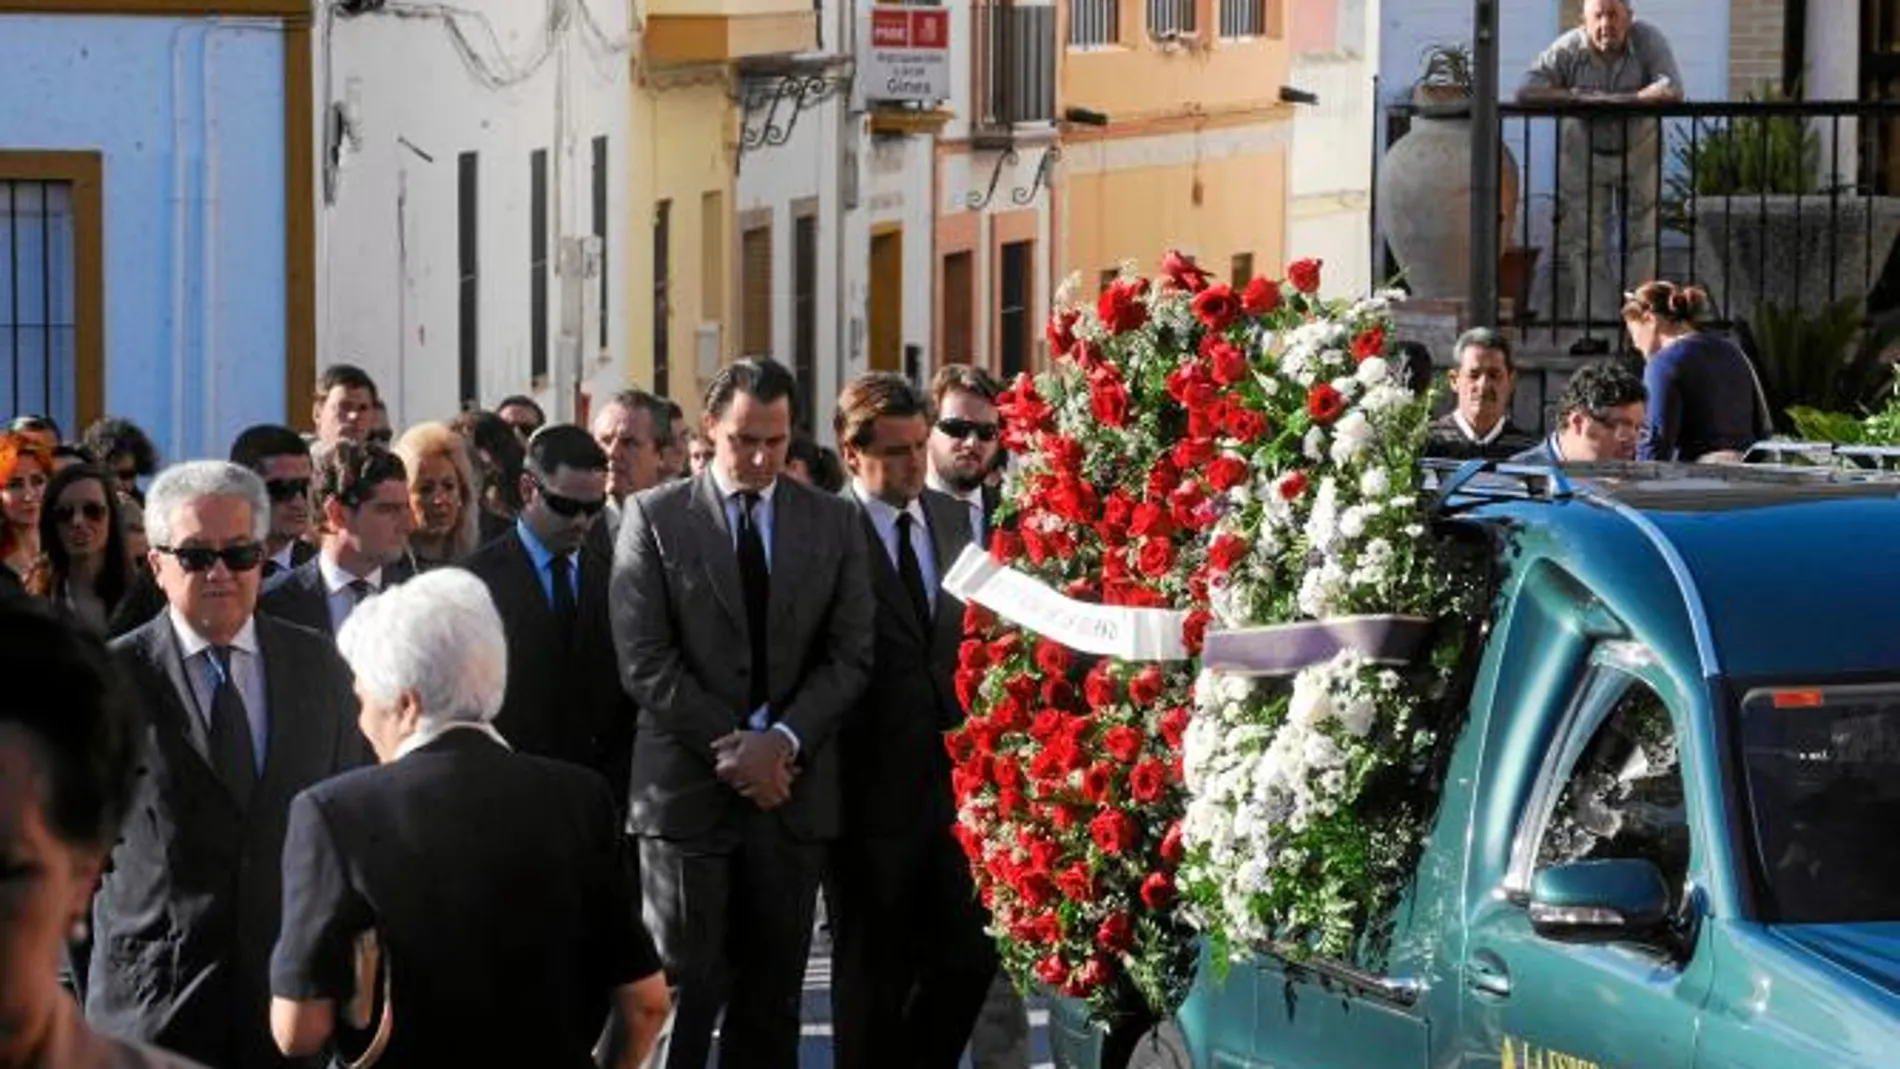 Familiares y amigos se dirigen a la parroquia donde se celebró el funeral por Juan de Dios Pareja-Obregón